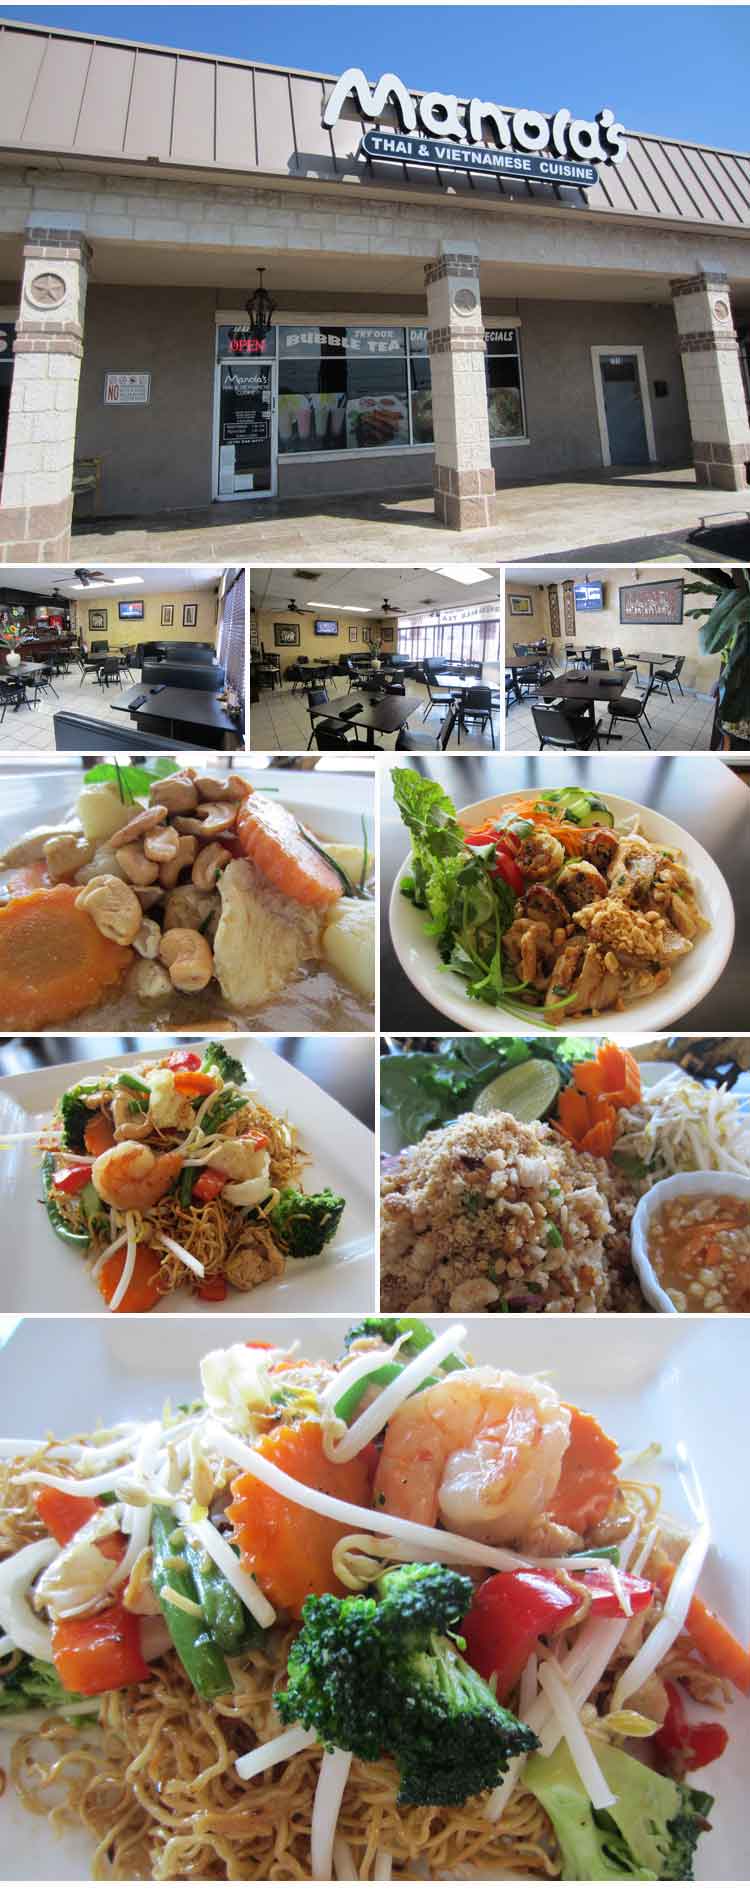 Manolas Thai and Vietnamese Cuisine San Antonio Restaurant